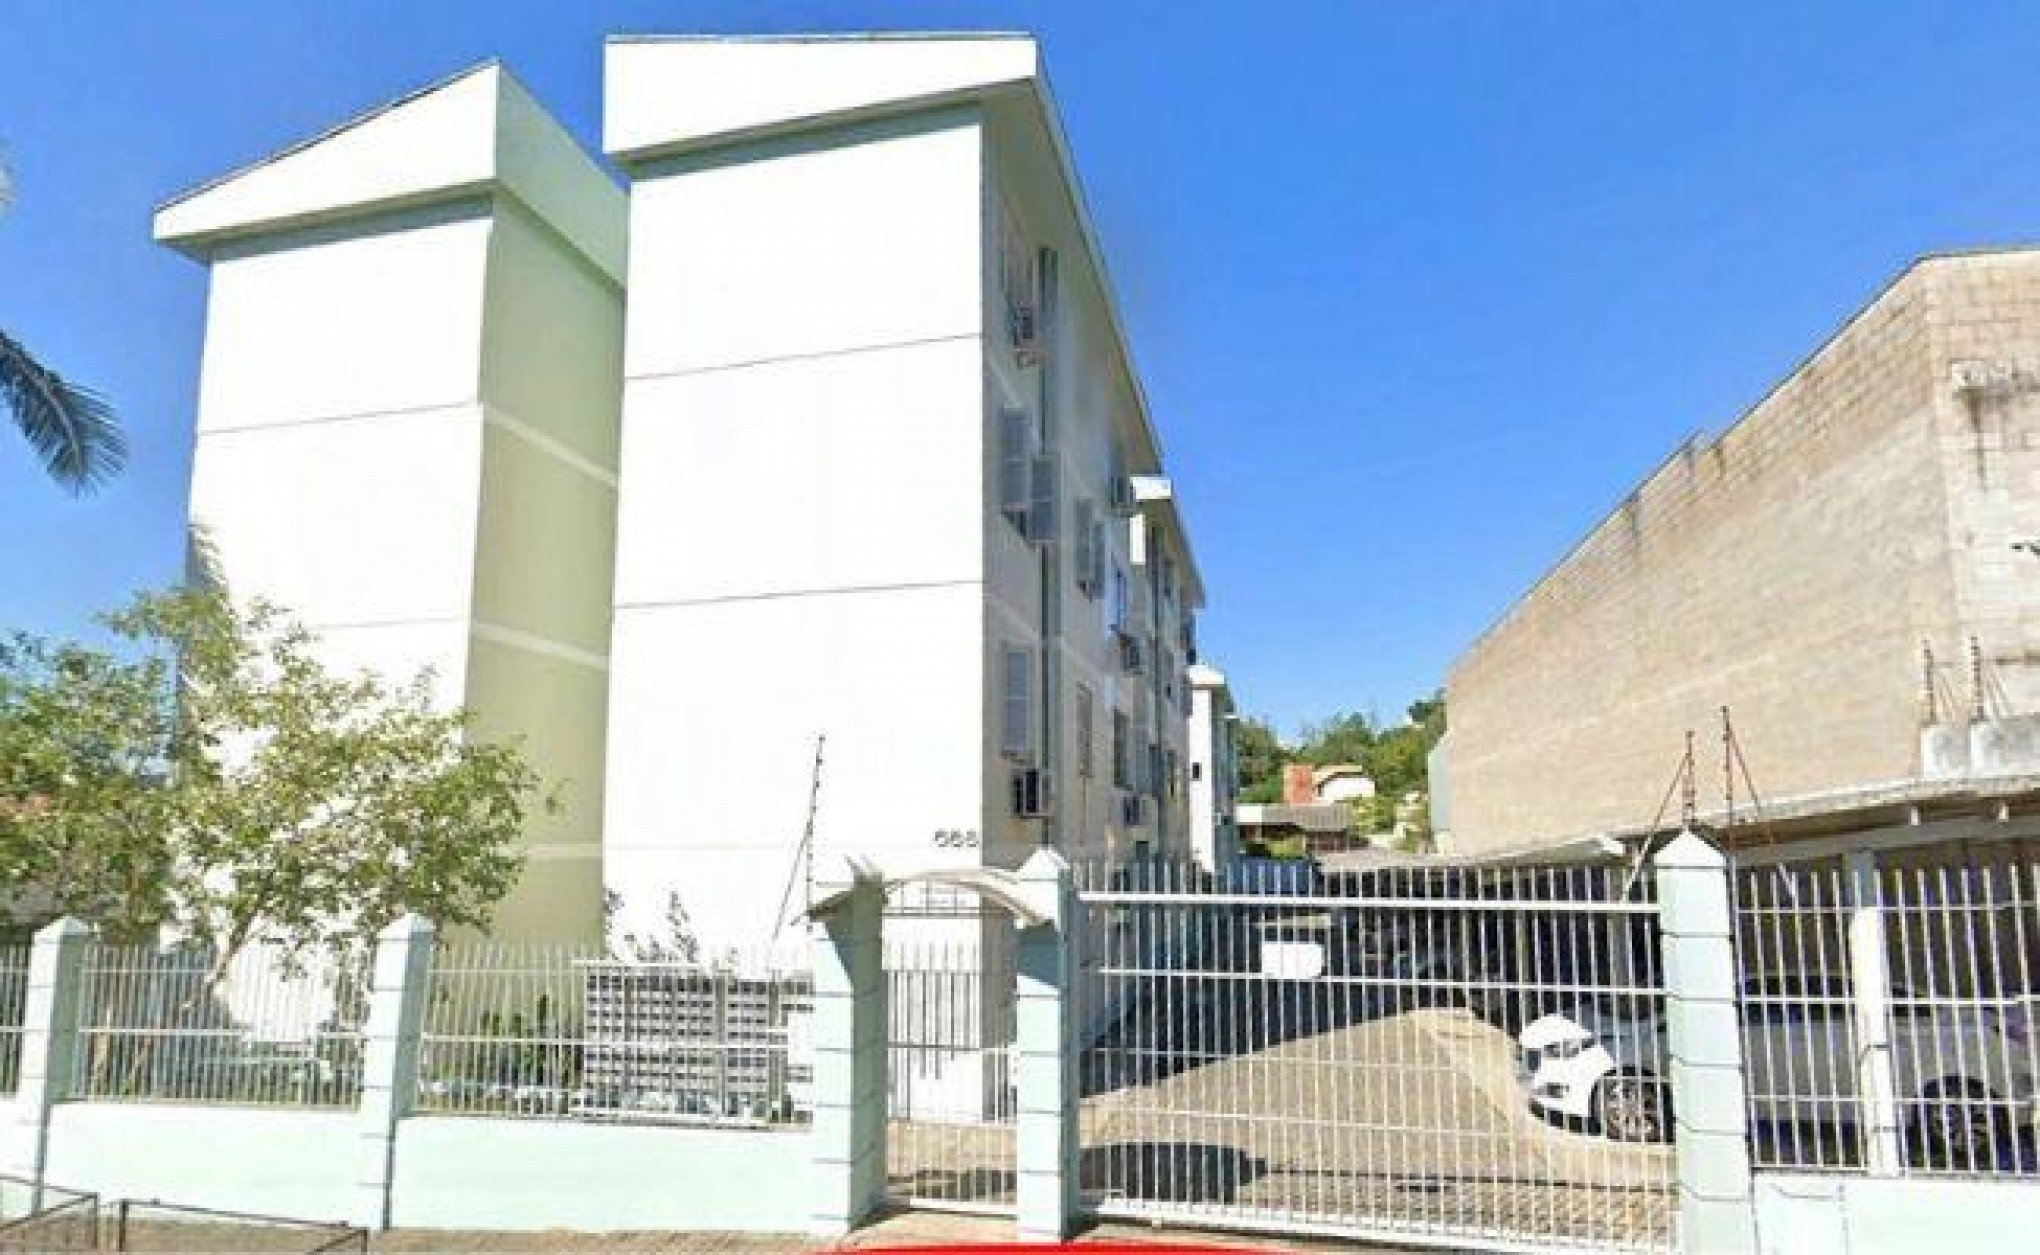 LEILÃO DE IMÓVEIS: Apartamentos com lance inicial de R$ 152 mil, garagens e terrenos serão leiloados pela prefeitura